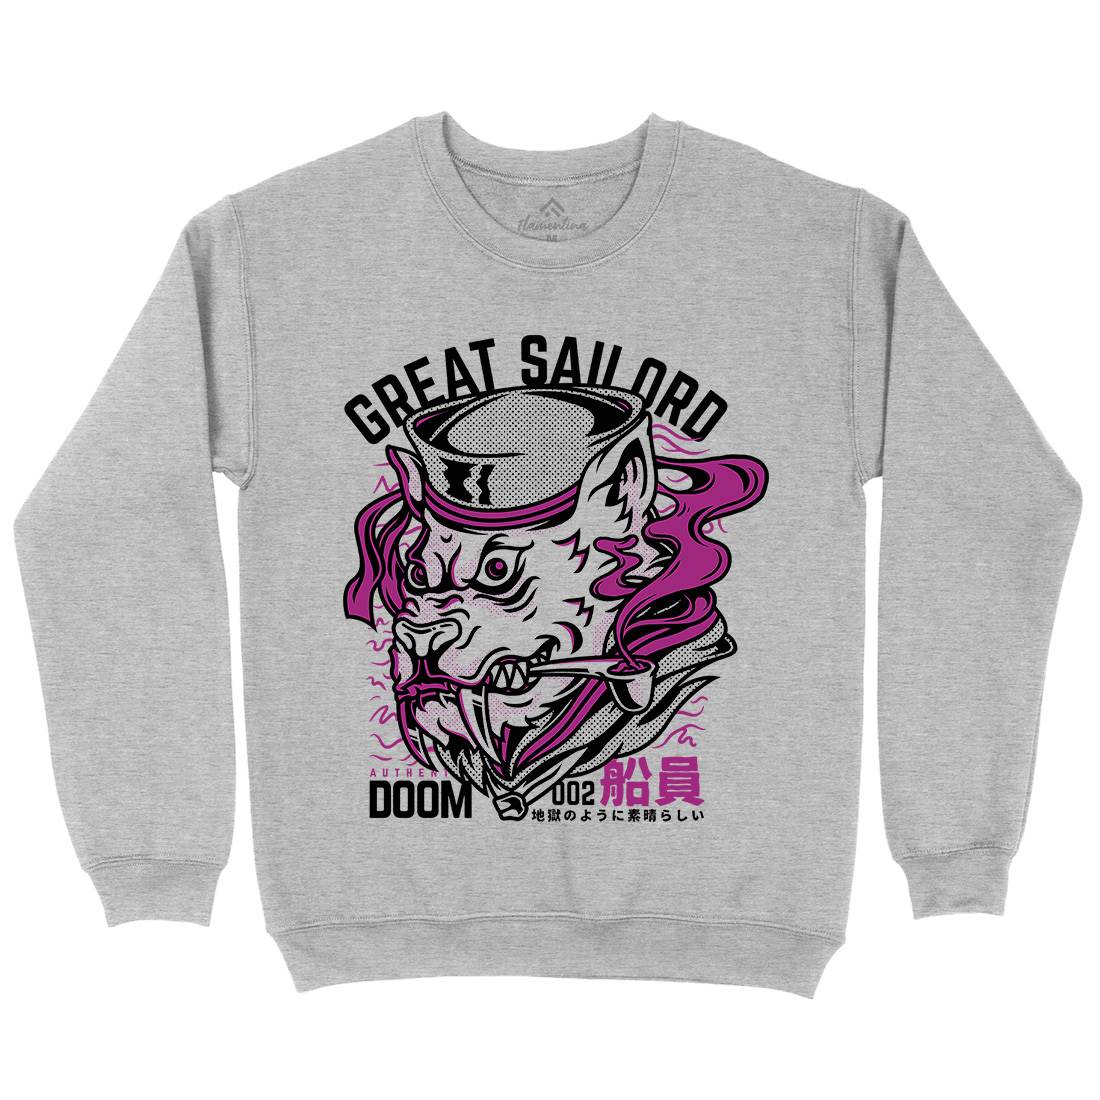 Great Sailord Kids Crew Neck Sweatshirt Navy D601